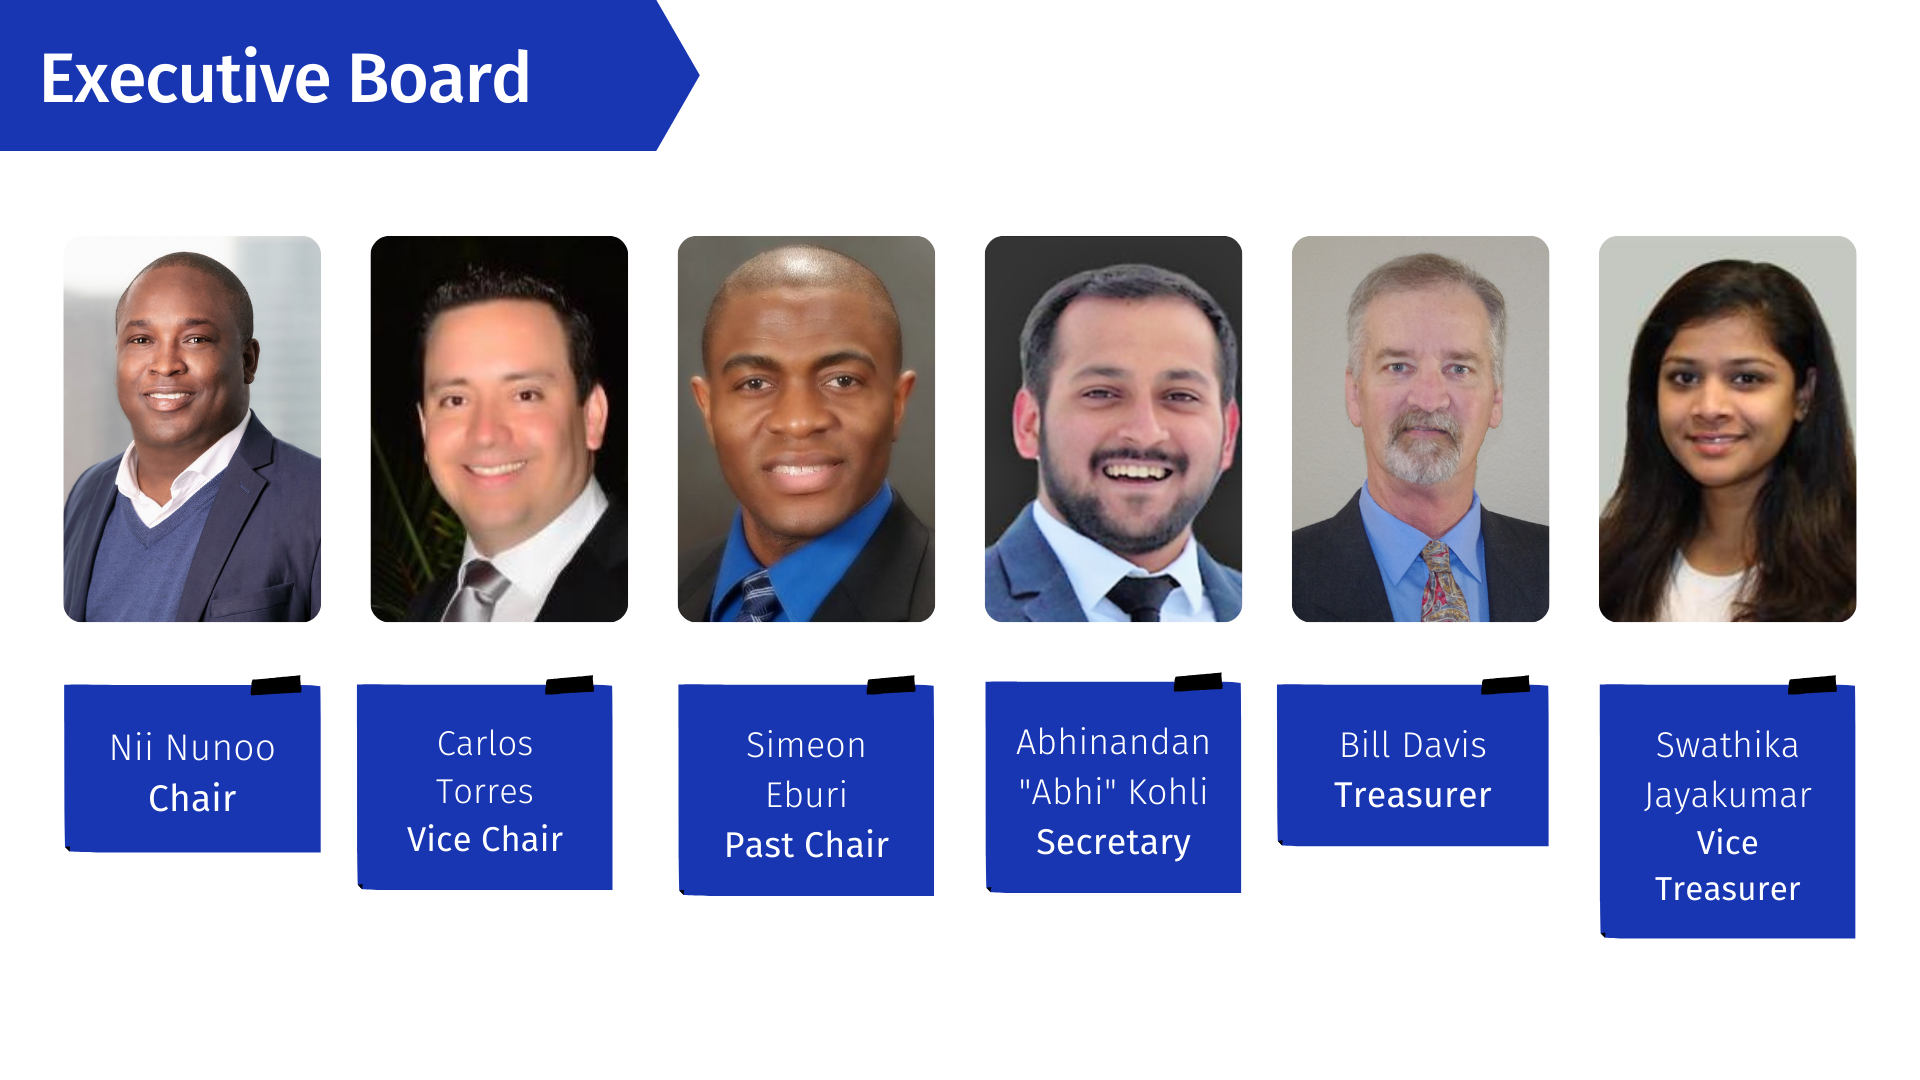 executive board of directors